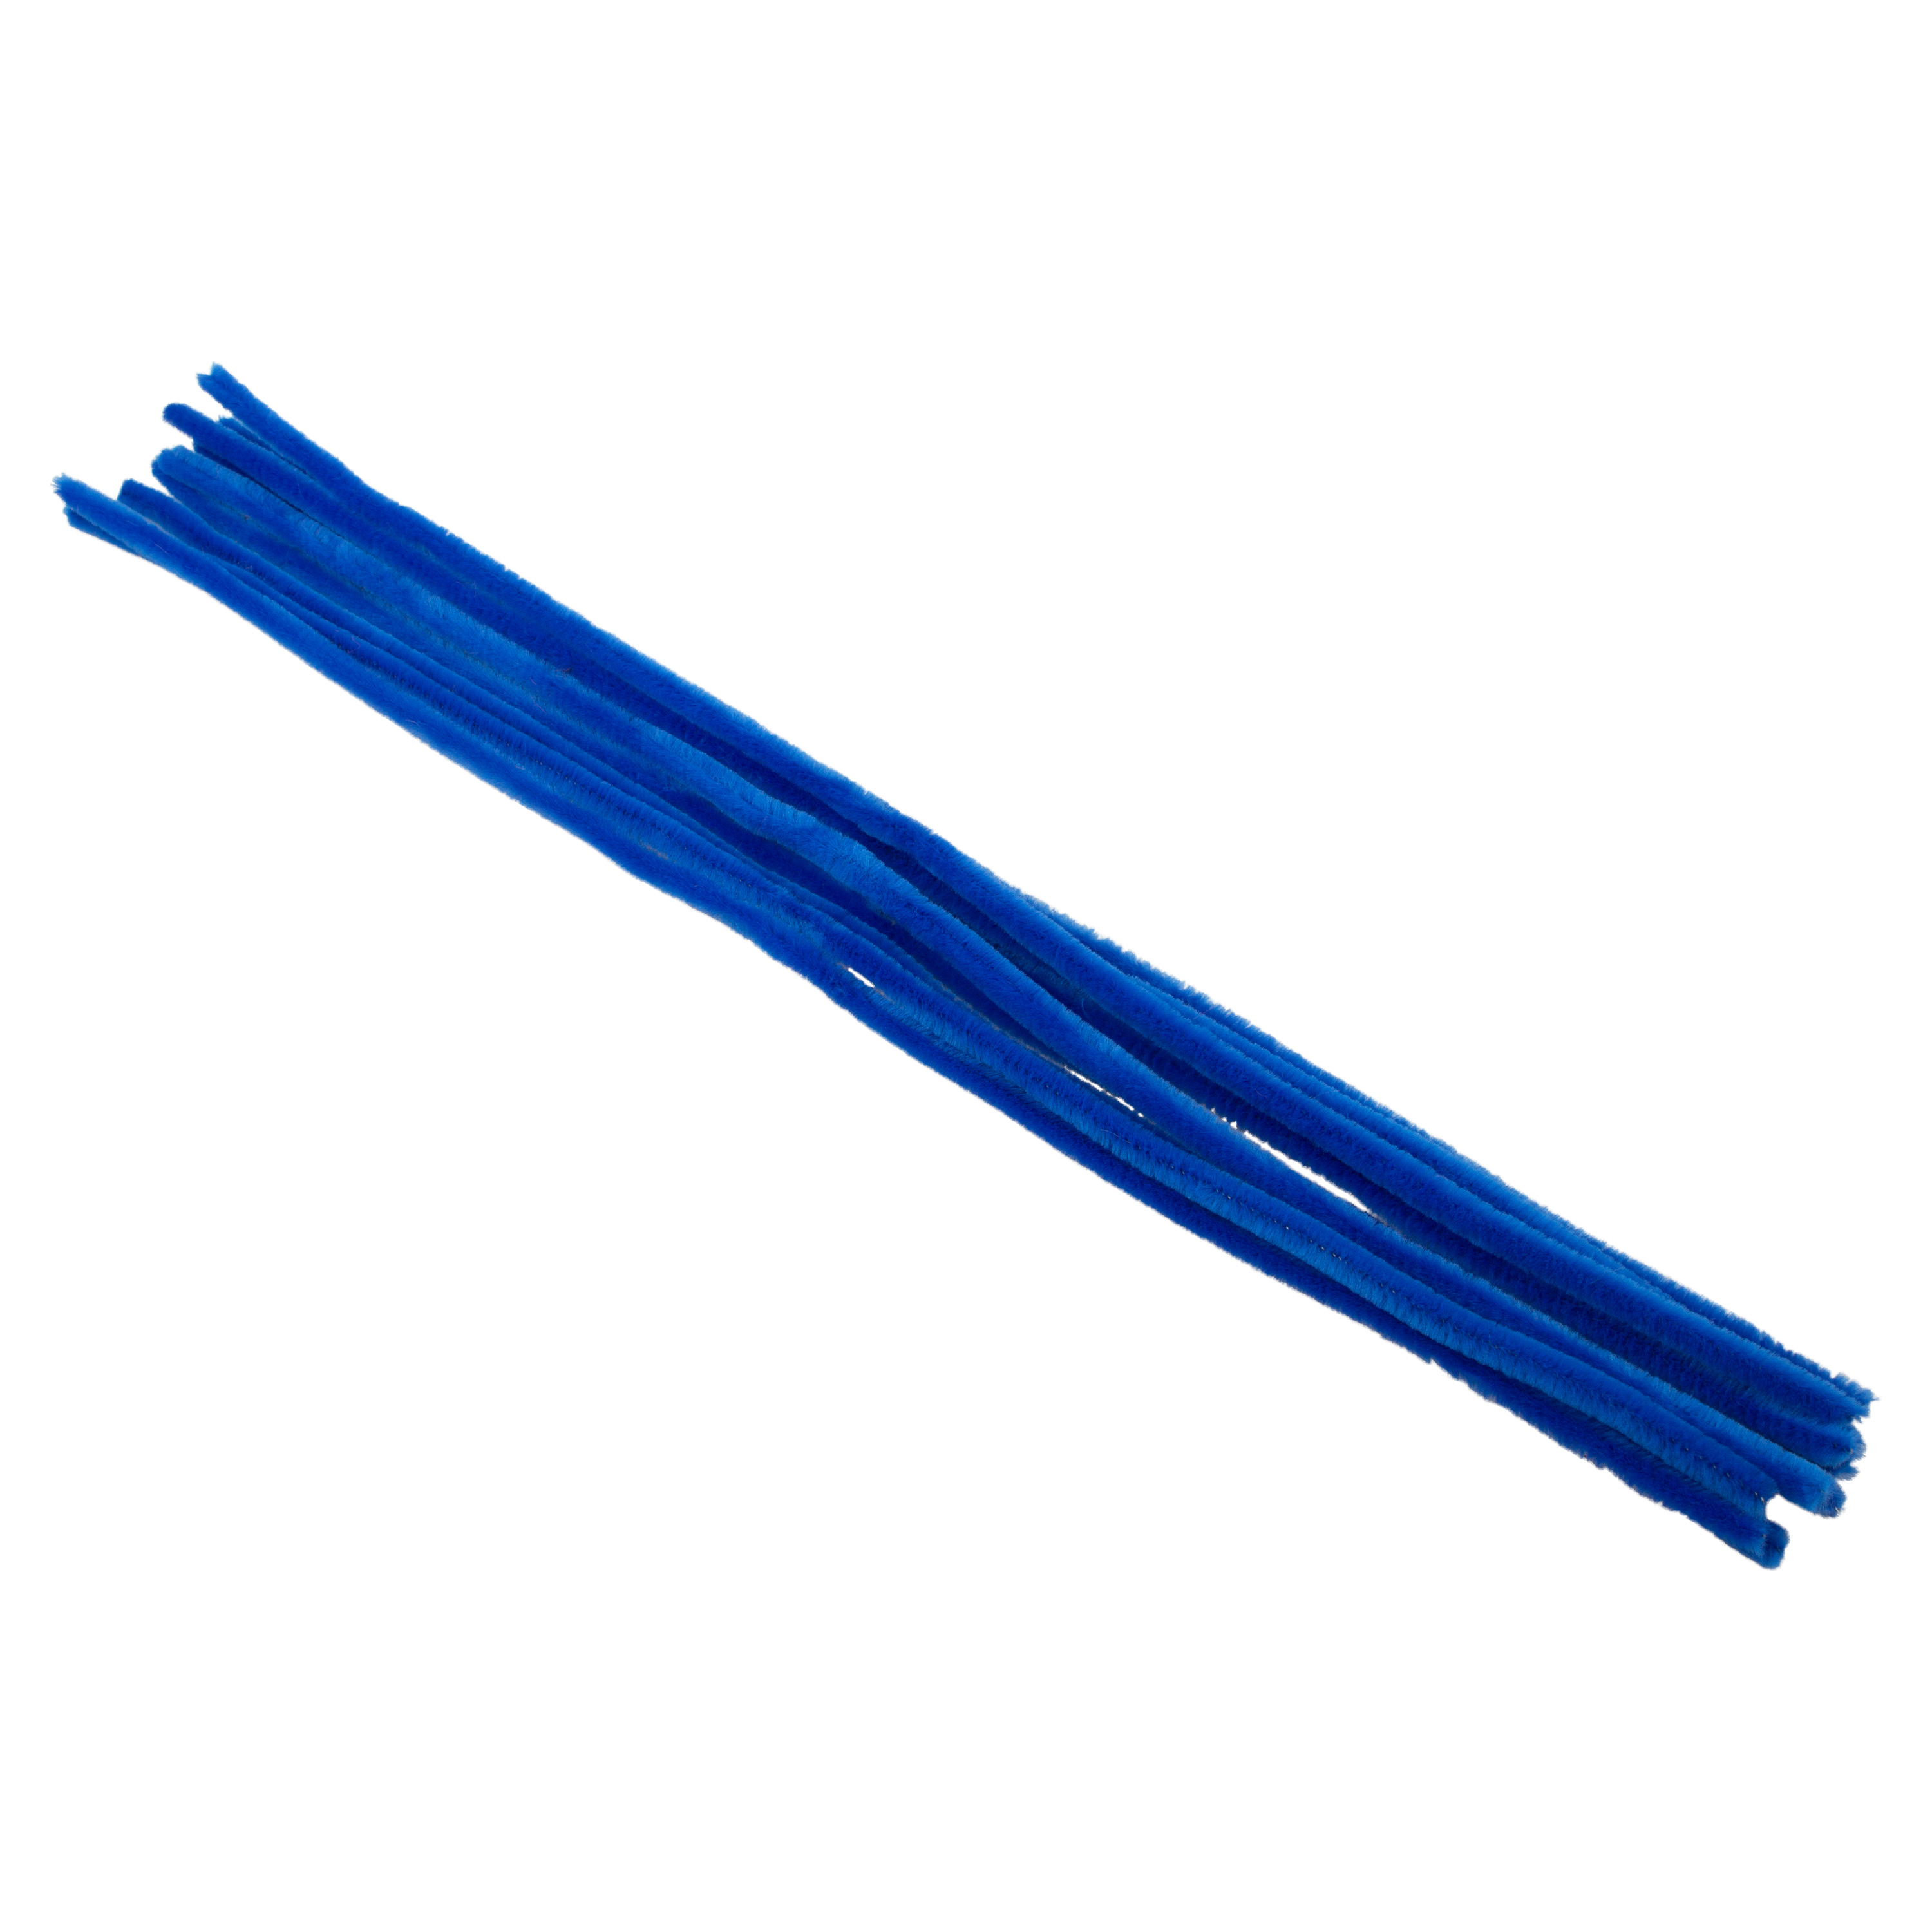 Pfeifenputzer blau, 10 Stück, L: 50 cm